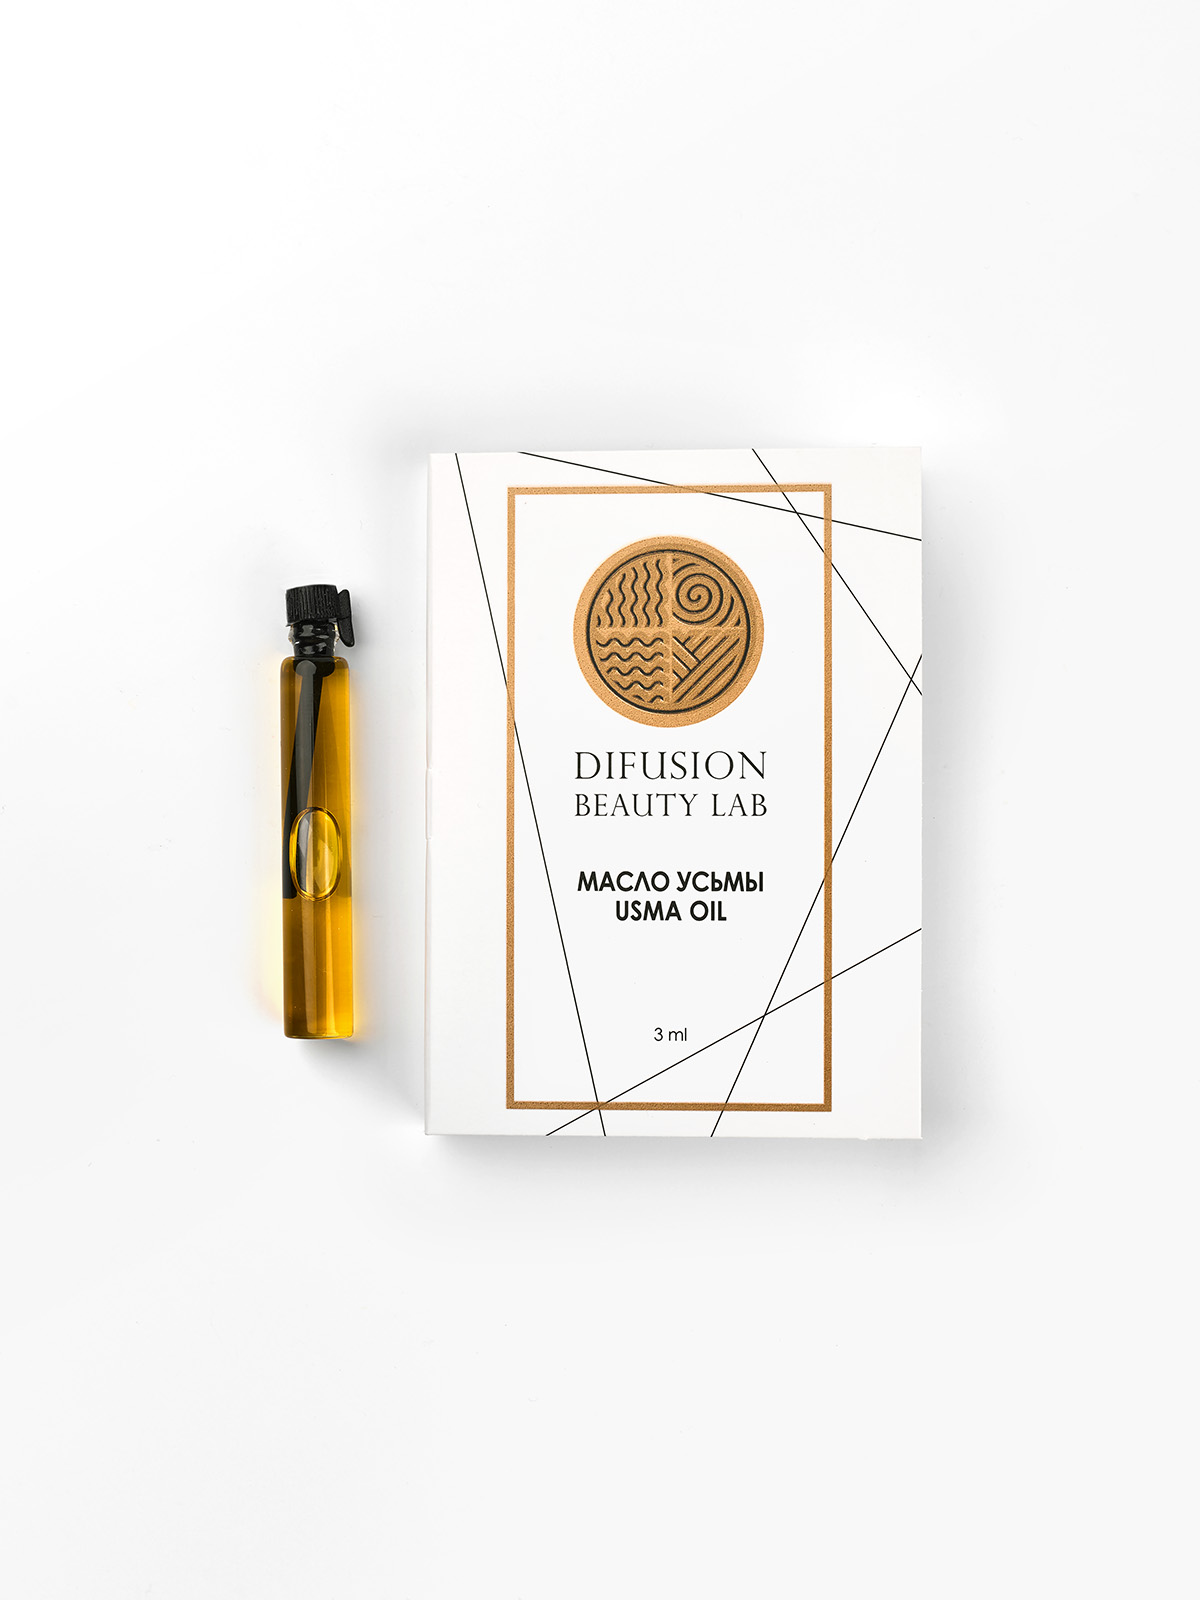 Масло семян усьмы Difusion Beauty Lab для активации роста волос, бровей и ресниц 3 мл